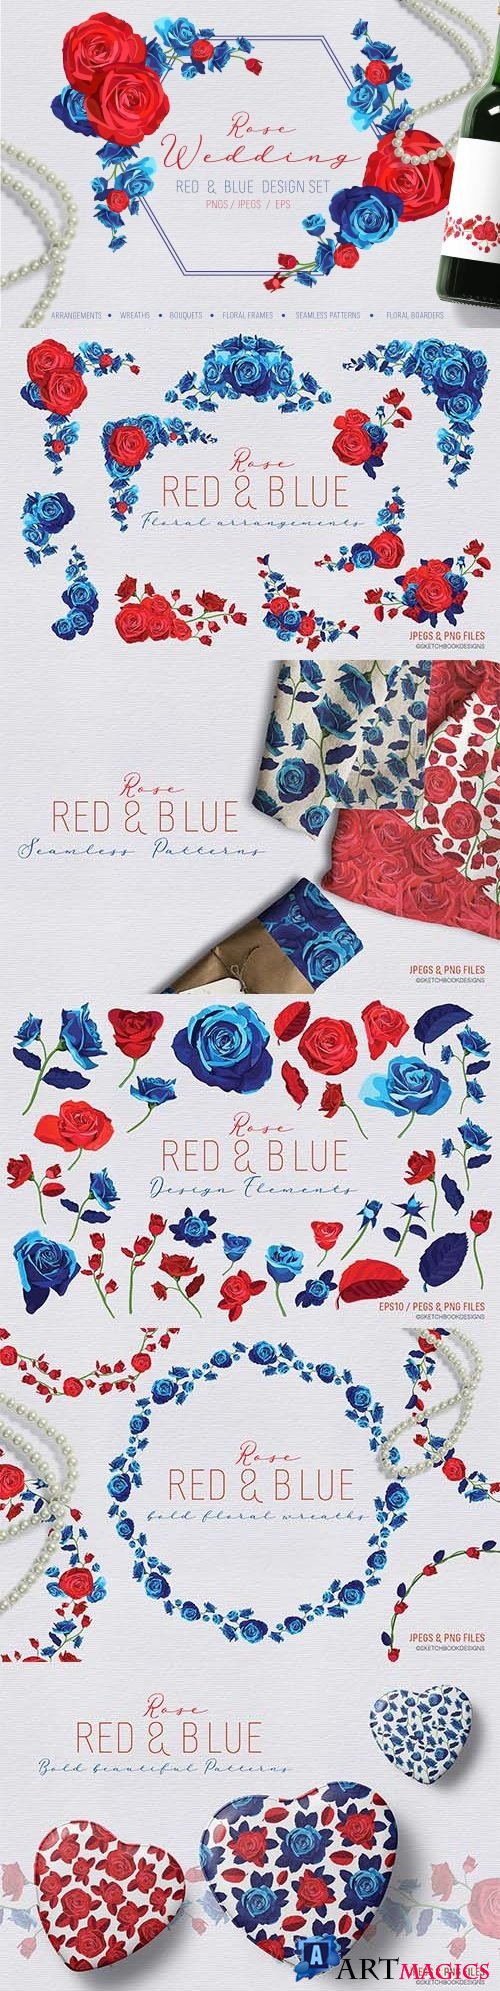 Rose Wedding Red and Blue Design Set - 2897785